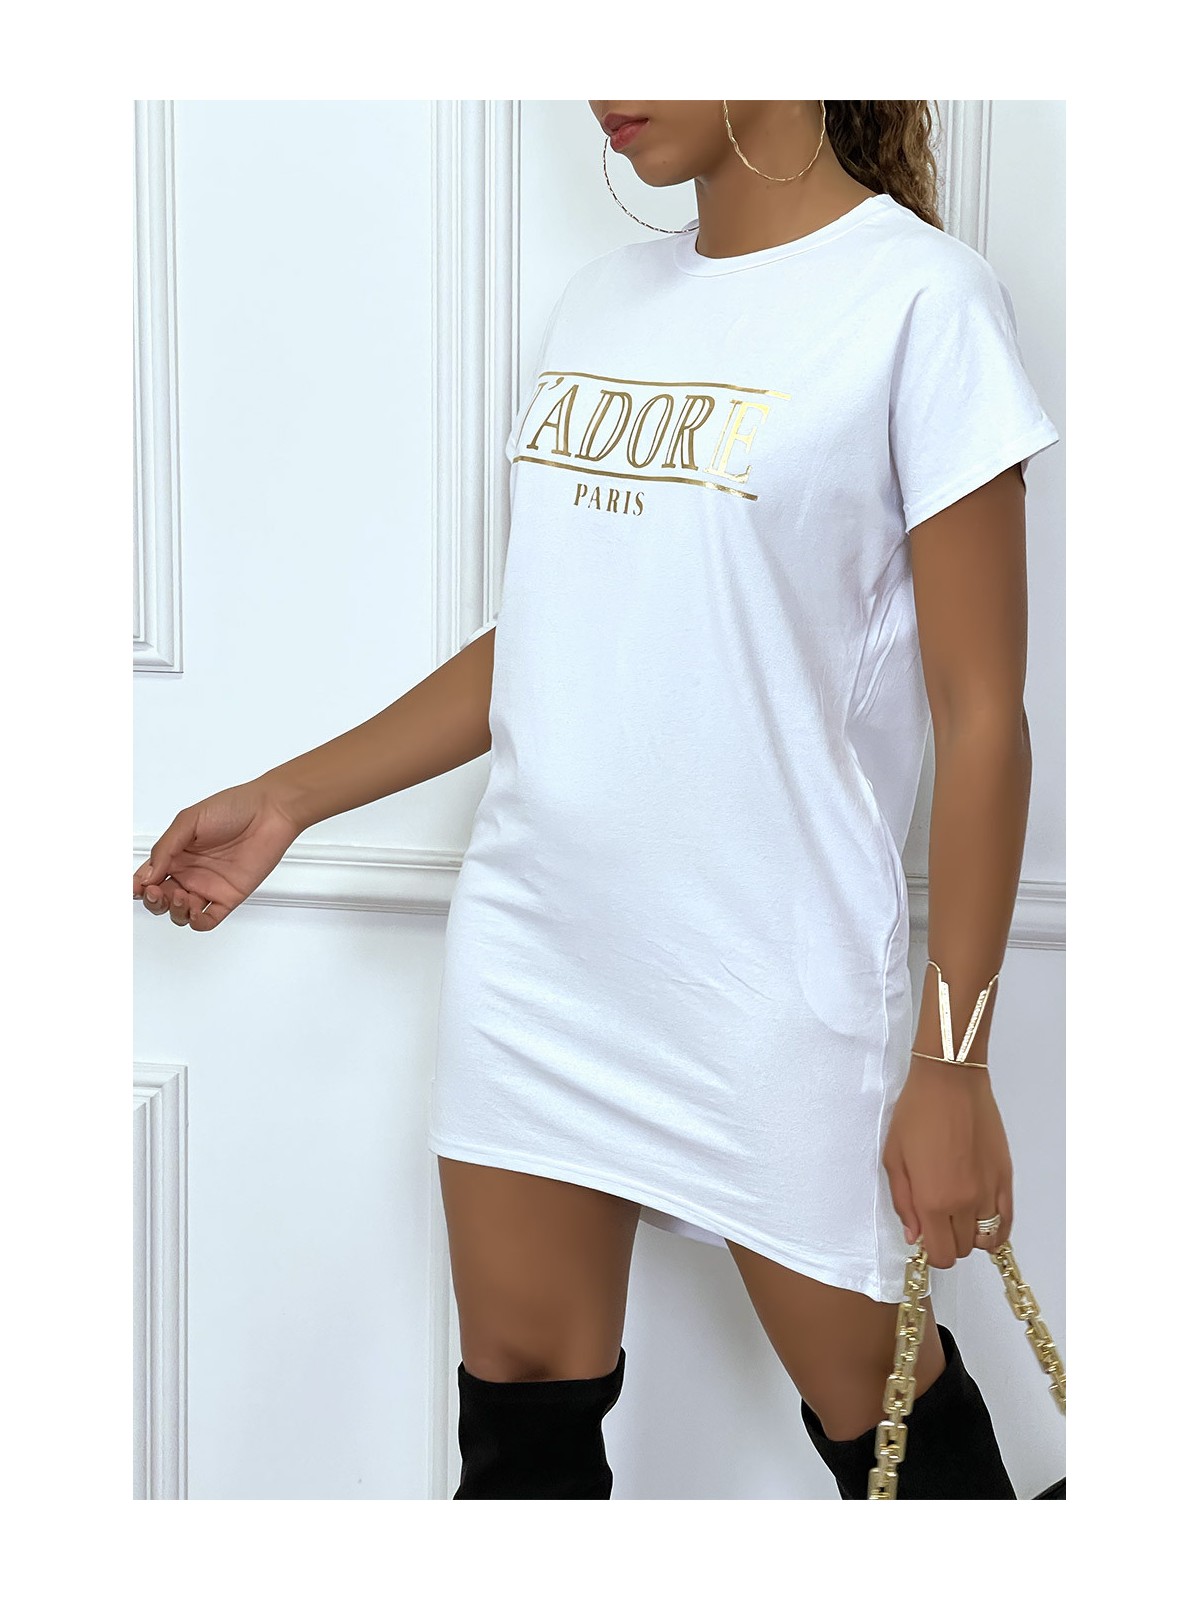 Robe T-shirt courte asymétrique blanc avec écriture doré "J'adore" et poches - 2